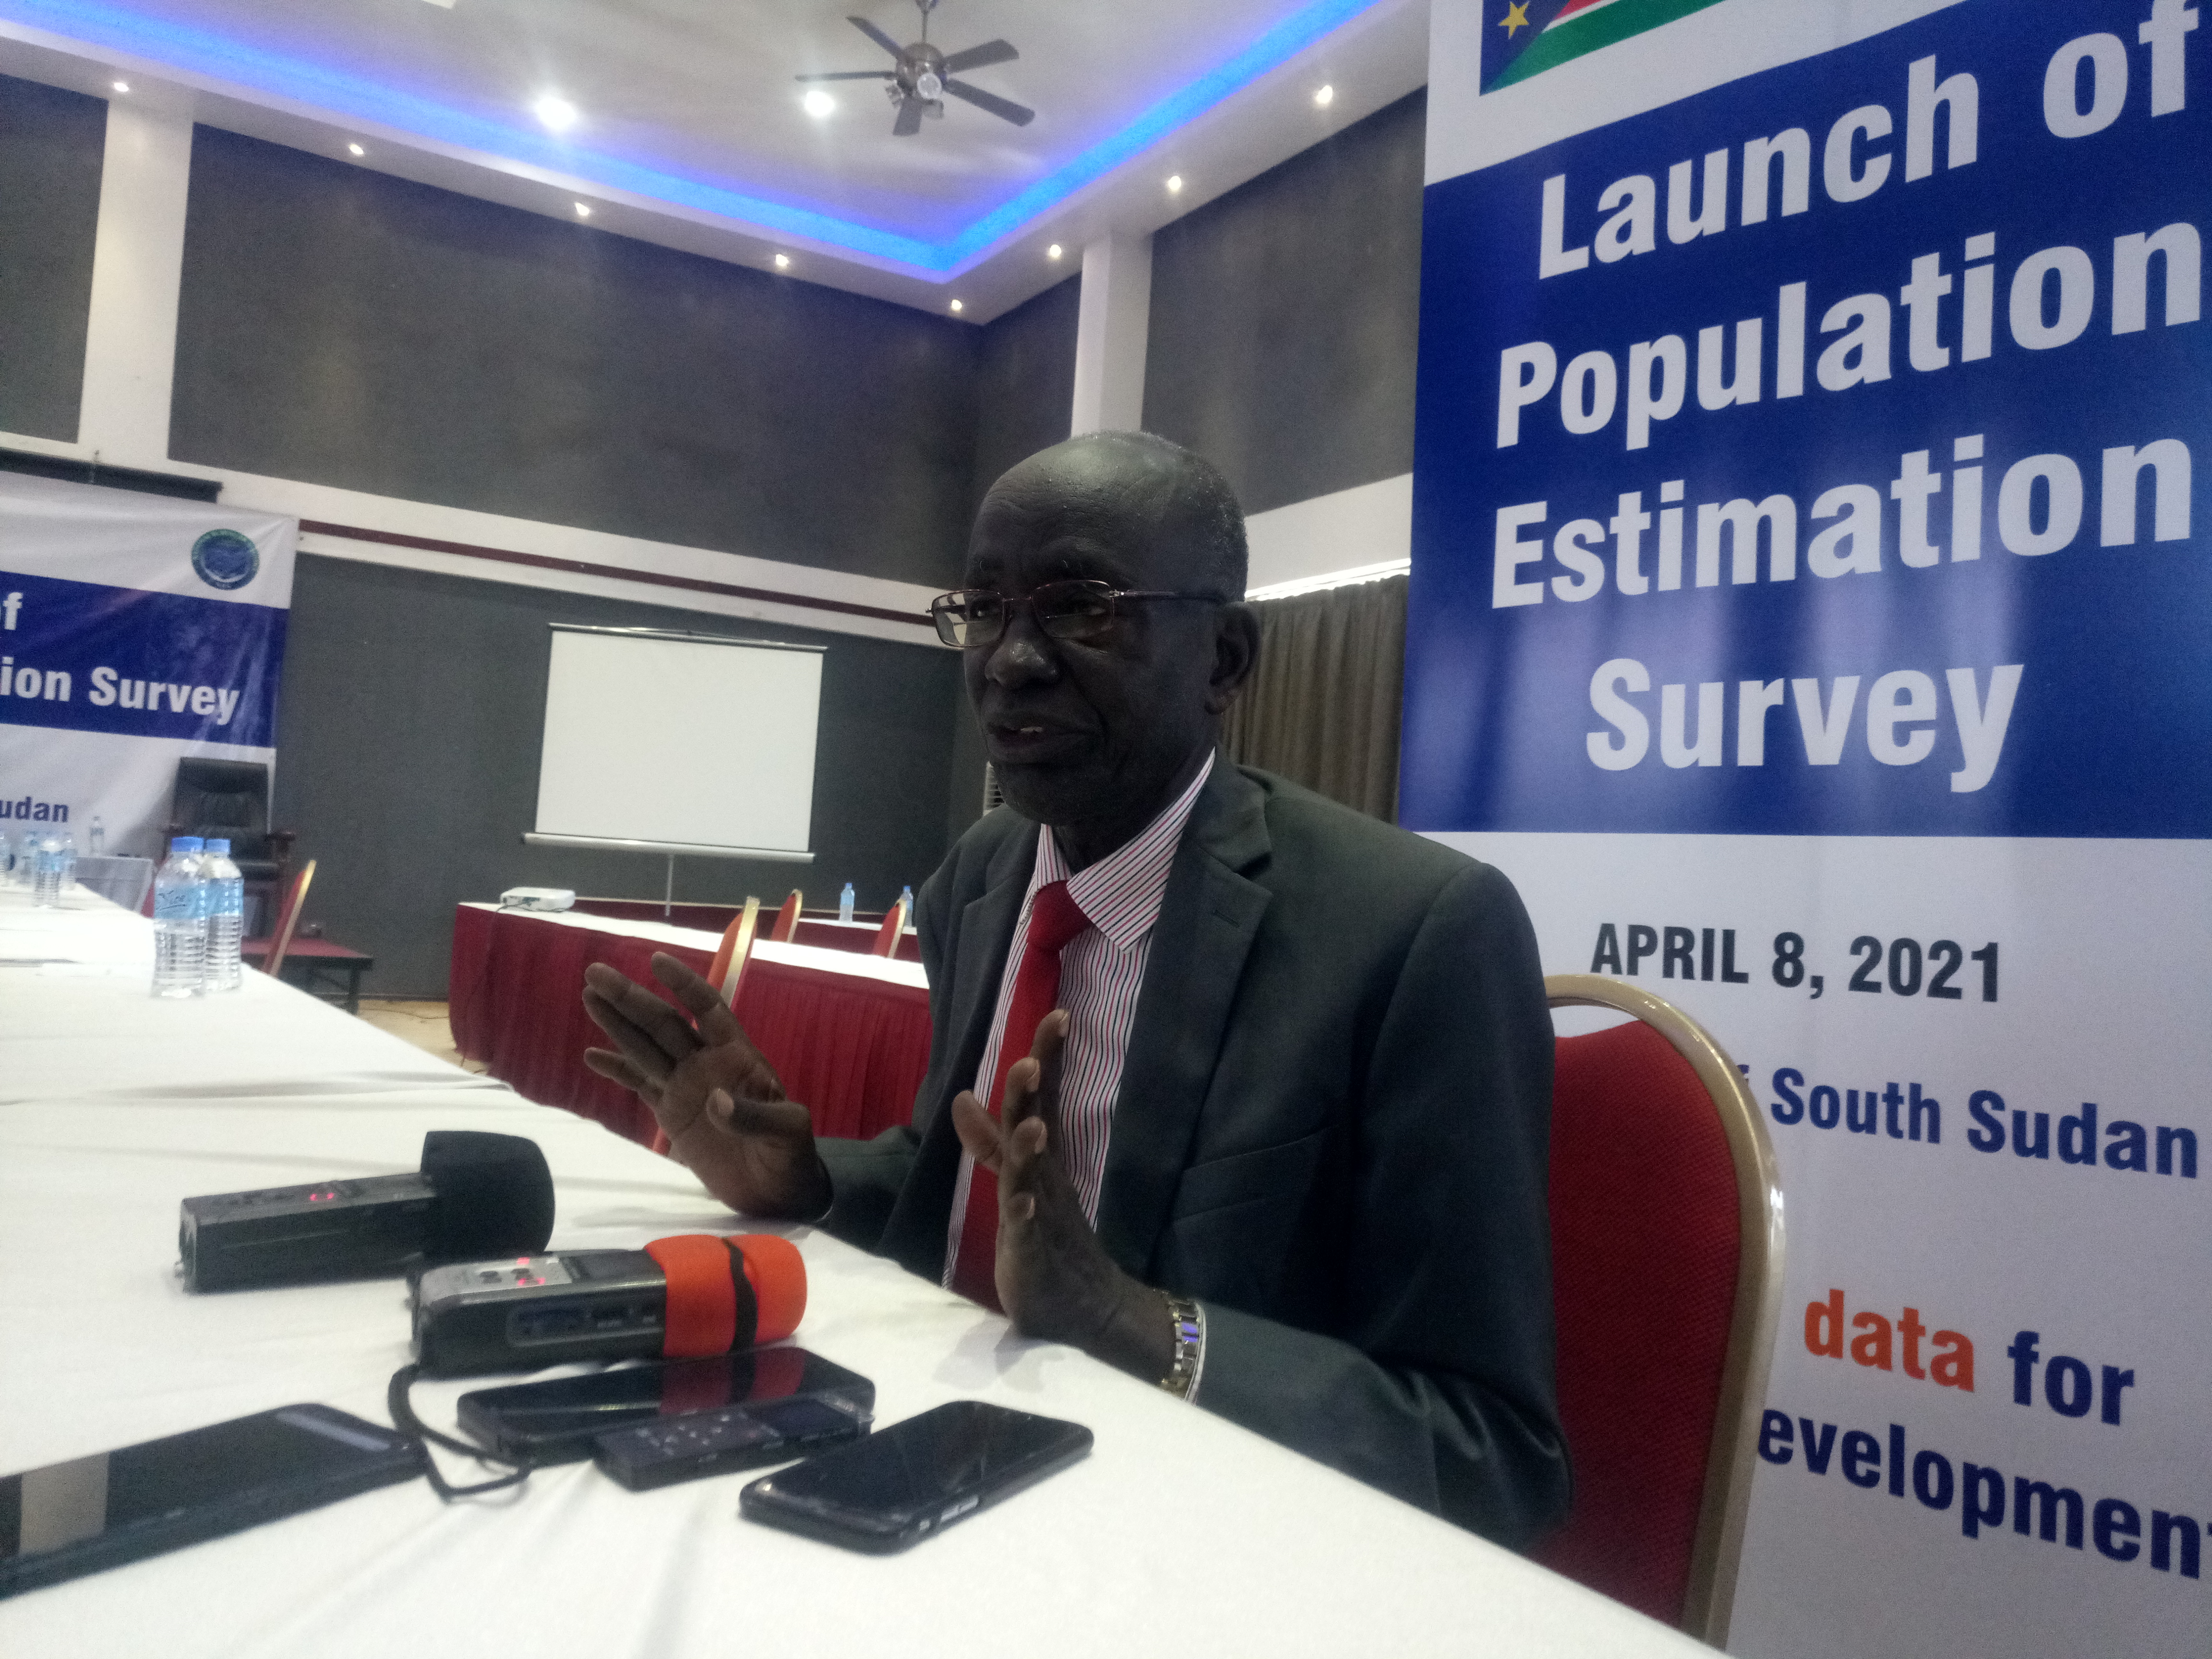 Gov’t launches population estimate survey